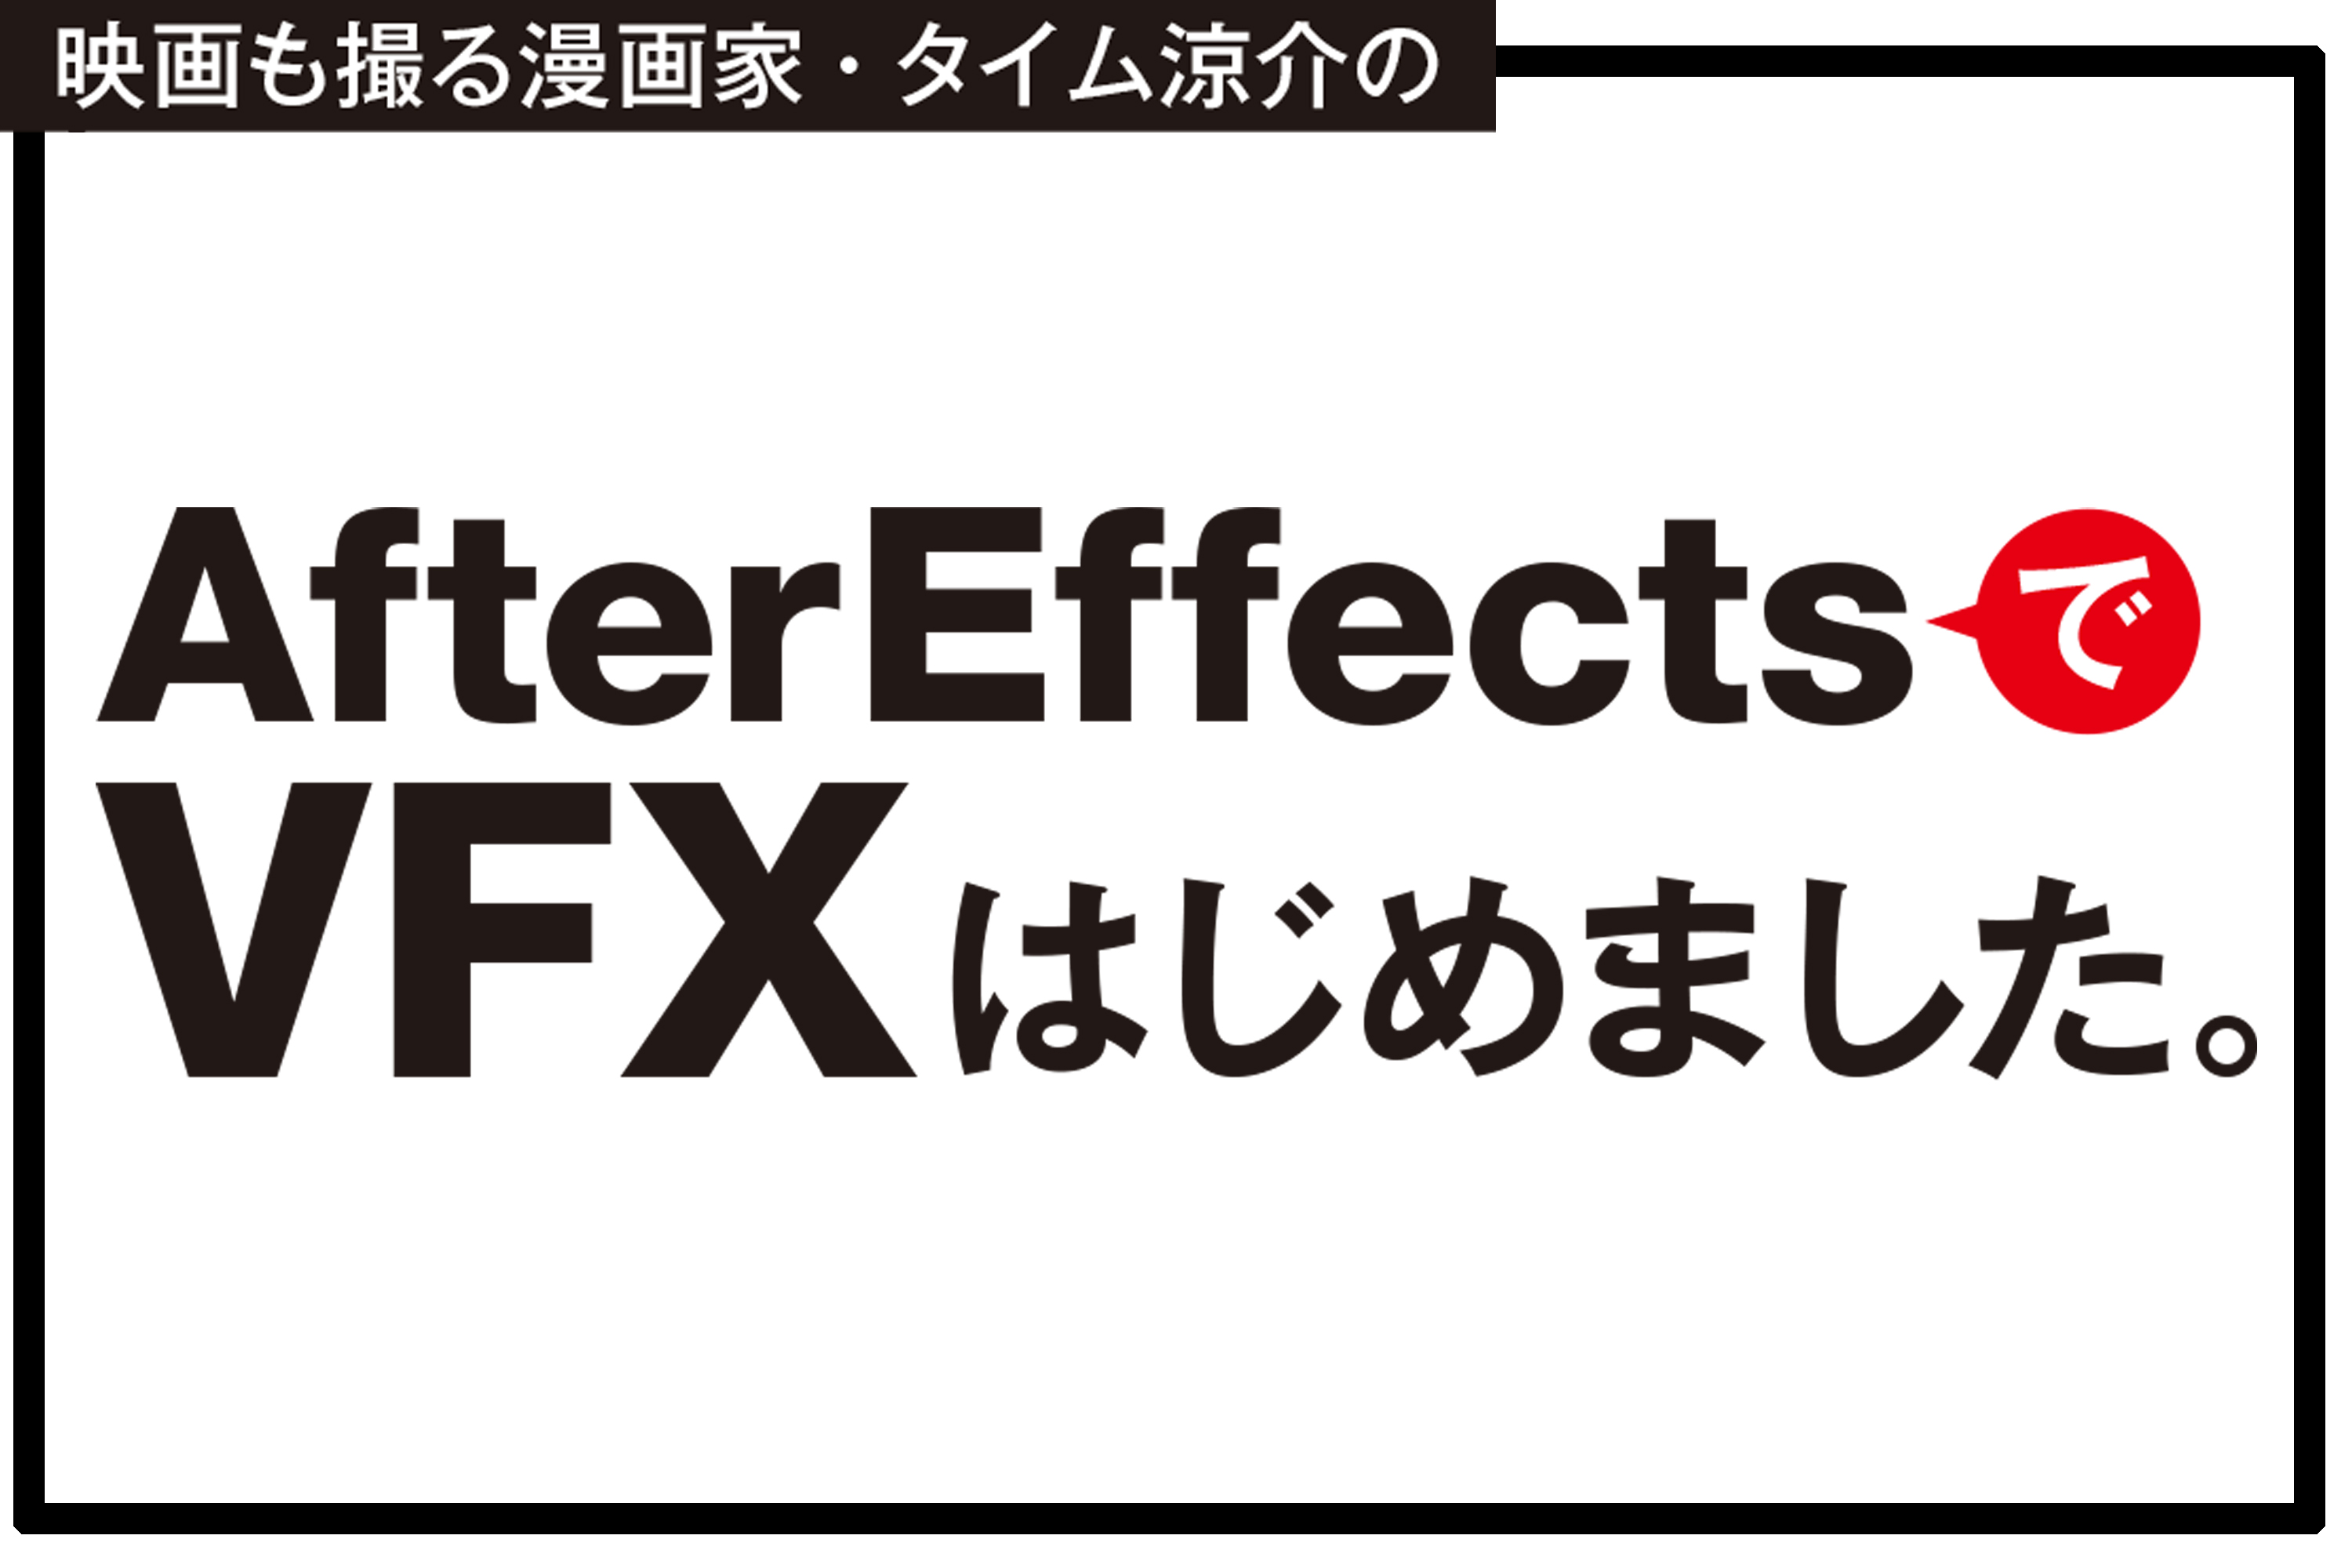 After Effectsでvfxはじめました Vol 5 無料プラグインsaberでライトセーバーを作る 前編 ビデオsalon